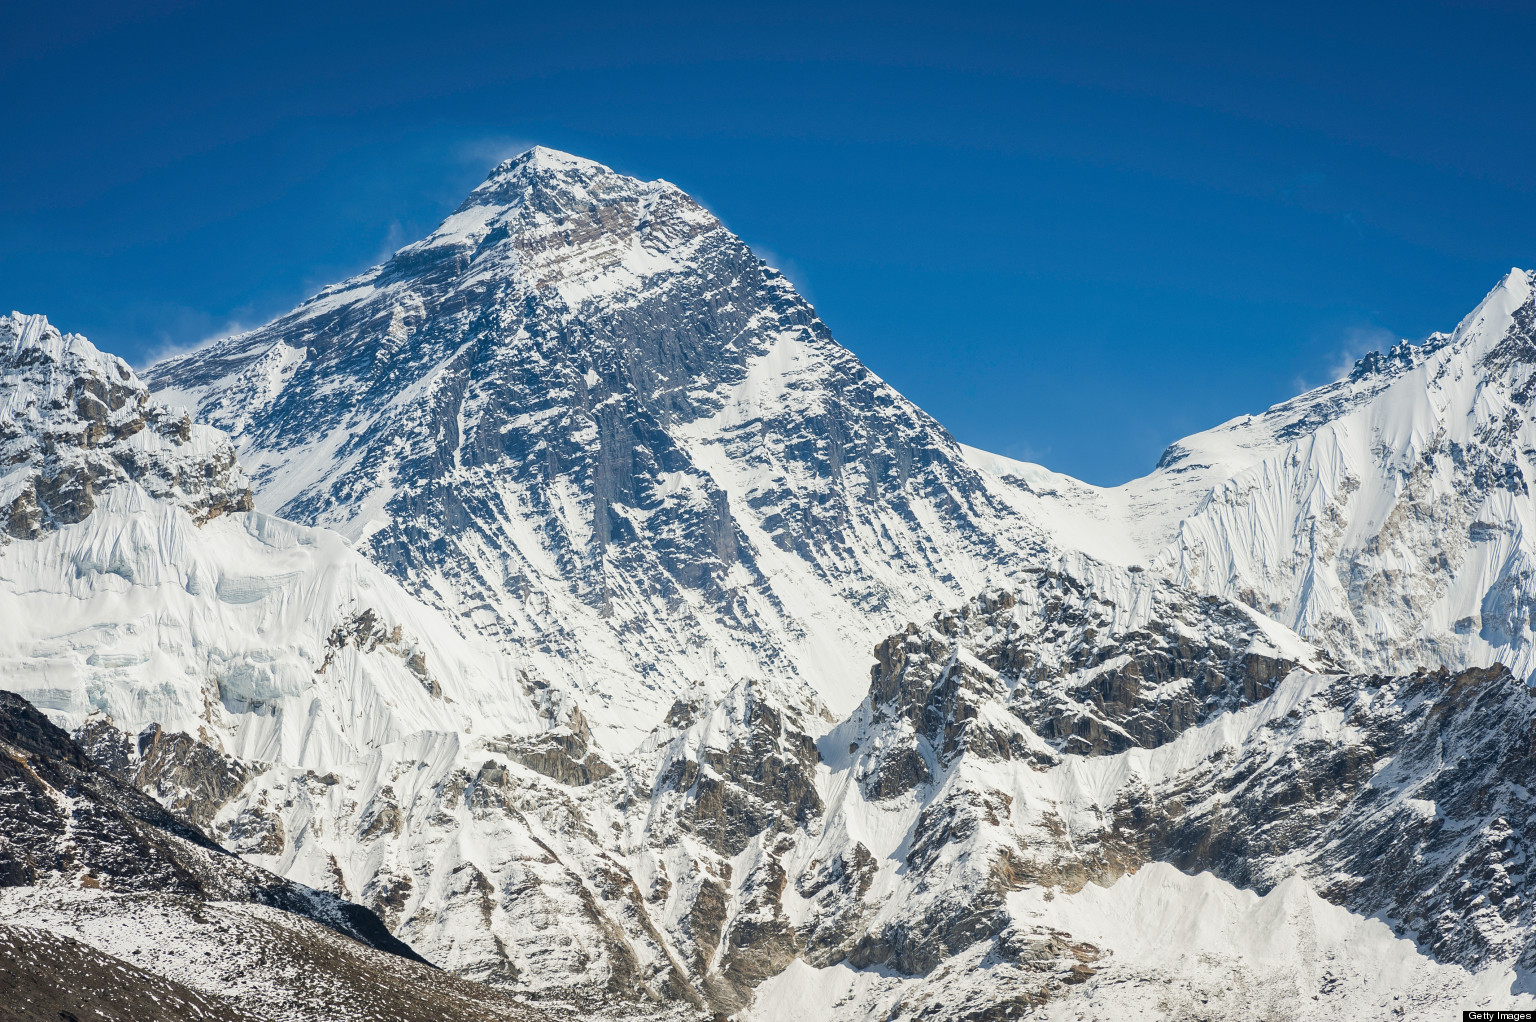 Mount Everest Wallpaper For Mobile - Everest - HD Wallpaper 